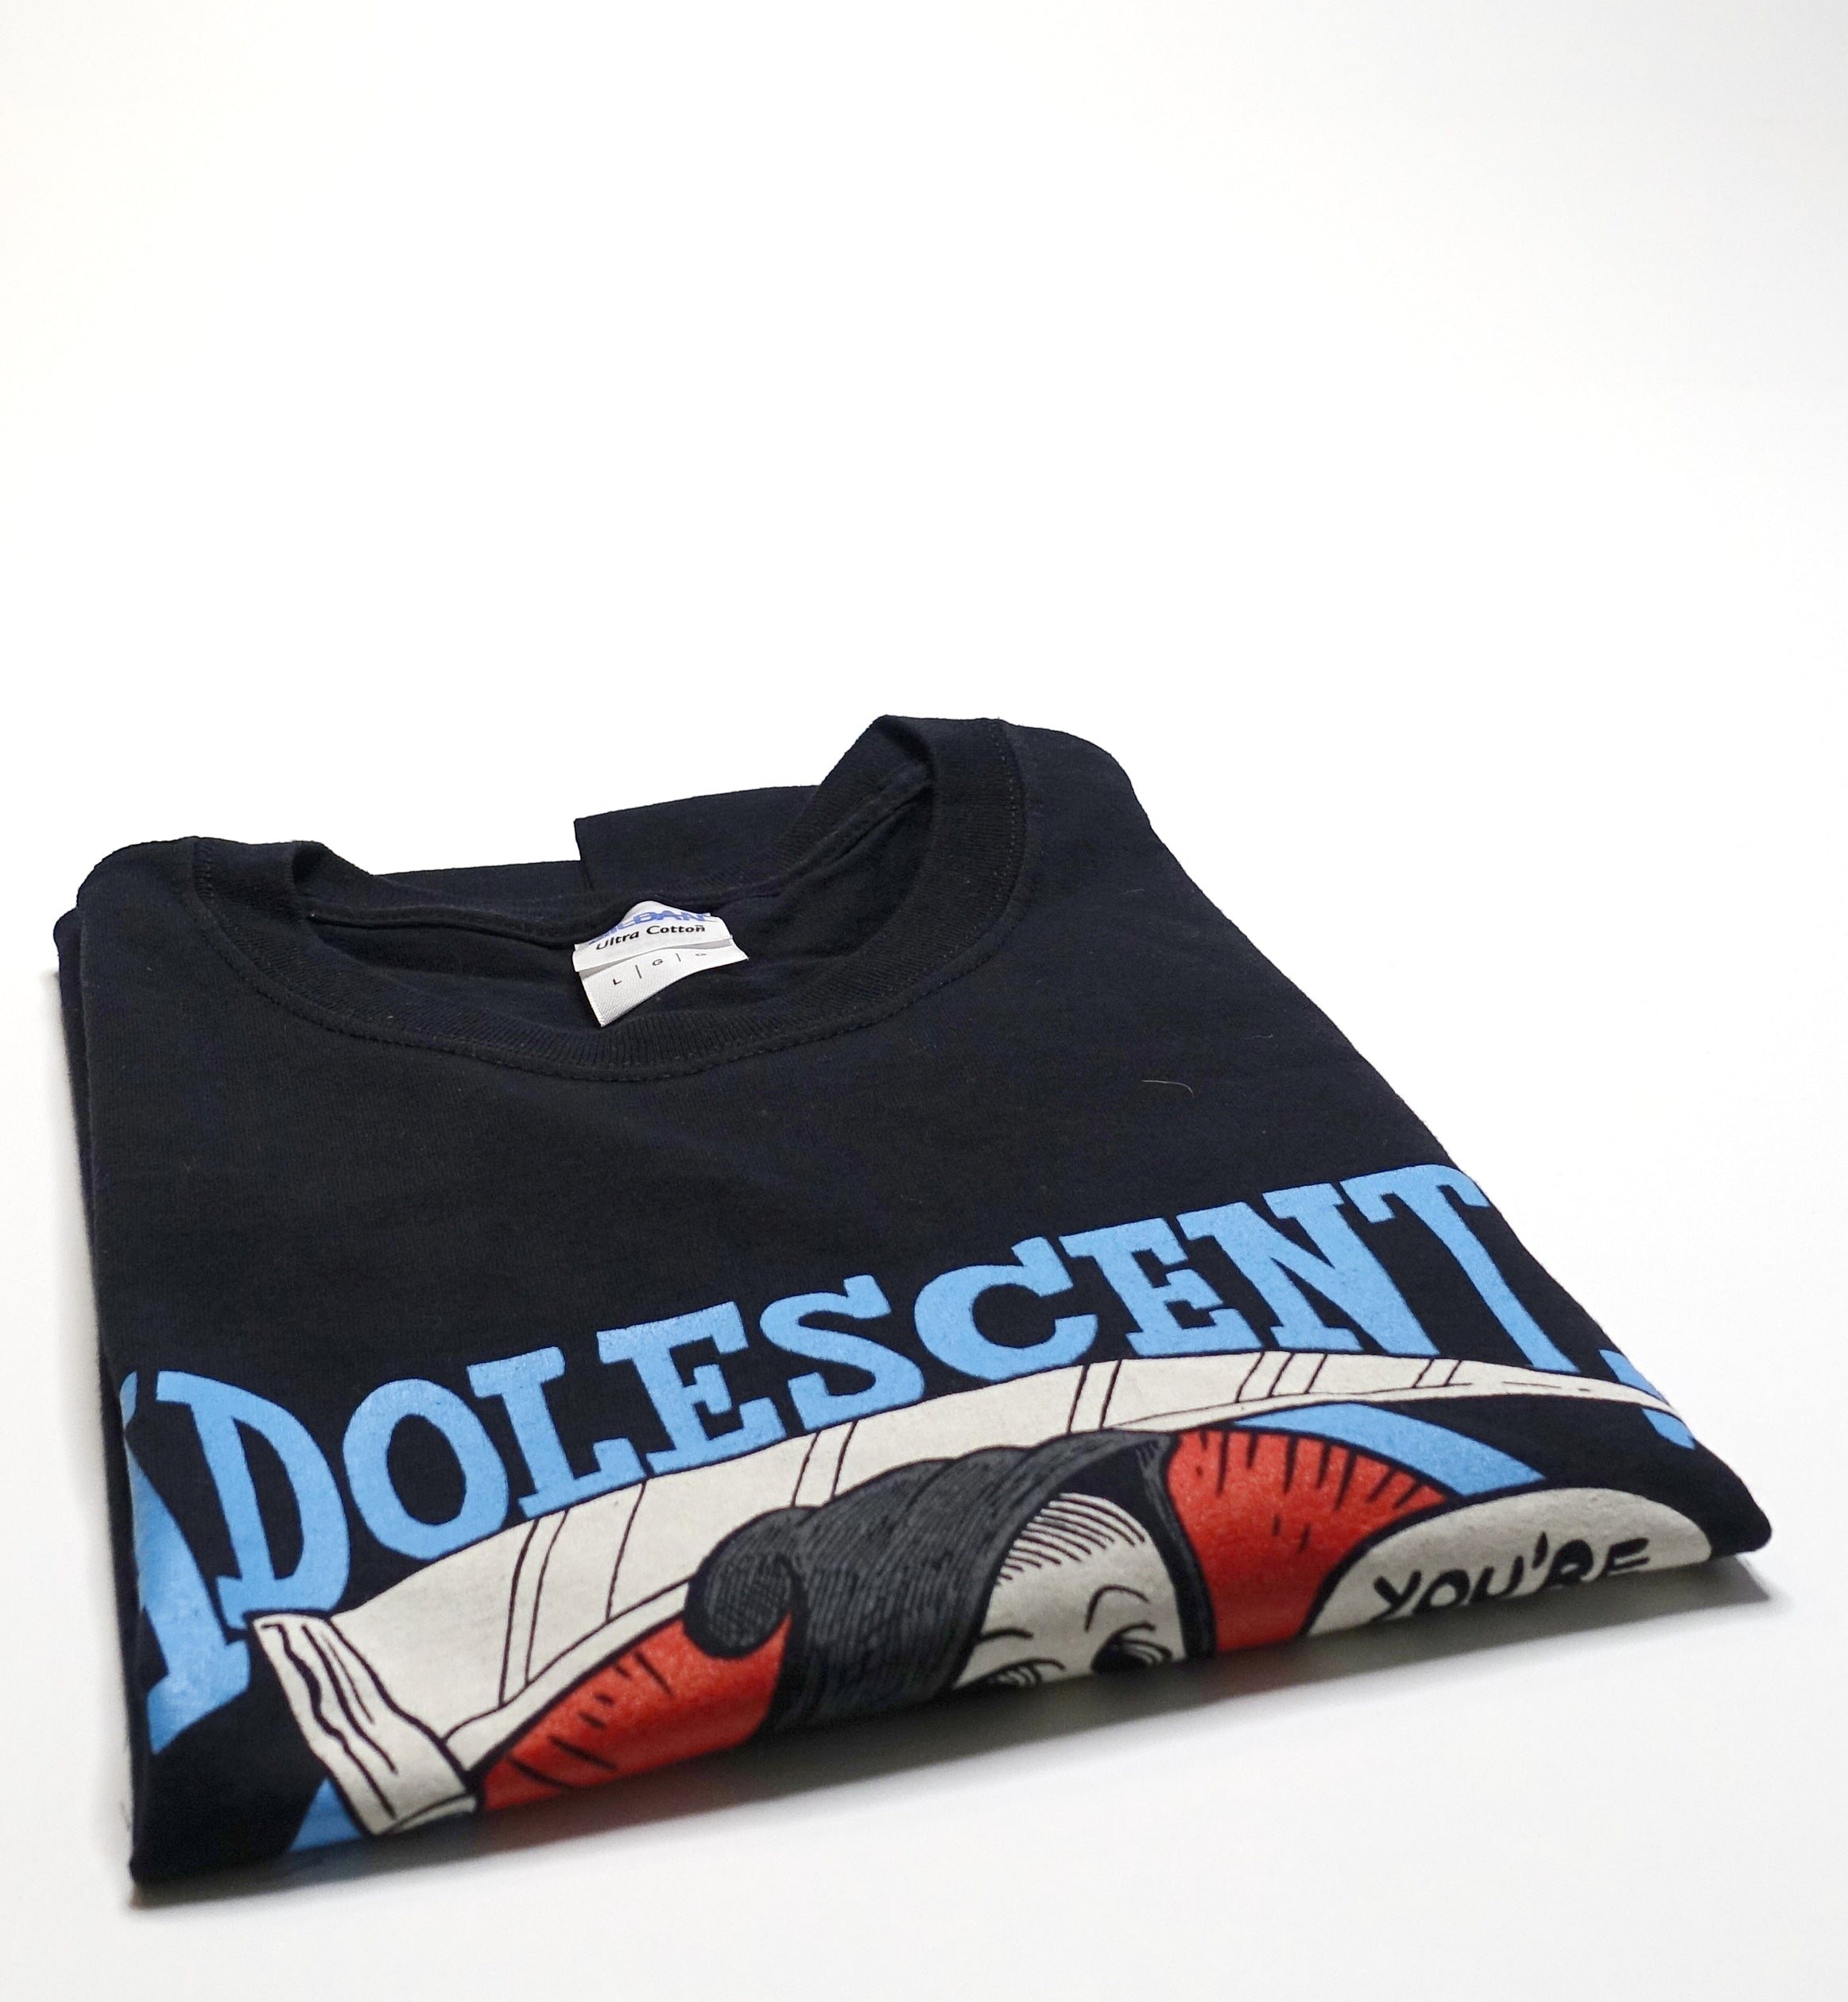 Adolescents - You're Next Tour Shirt Size Large